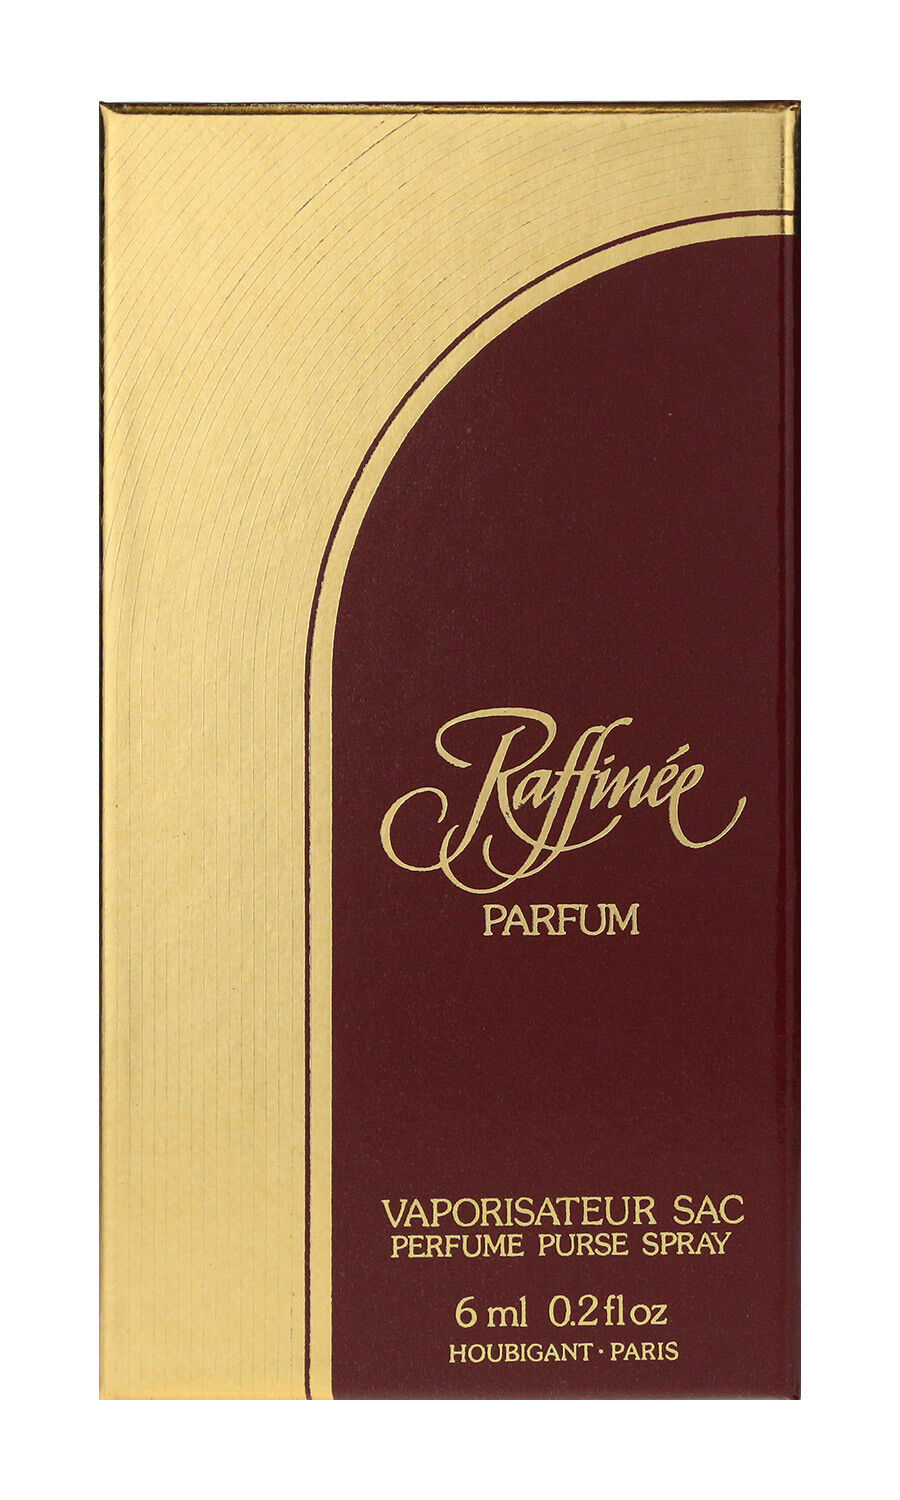 Houbigant Raffinee Parfum Pure Purse Spray 0.2Oz/6ml In Box Vintage